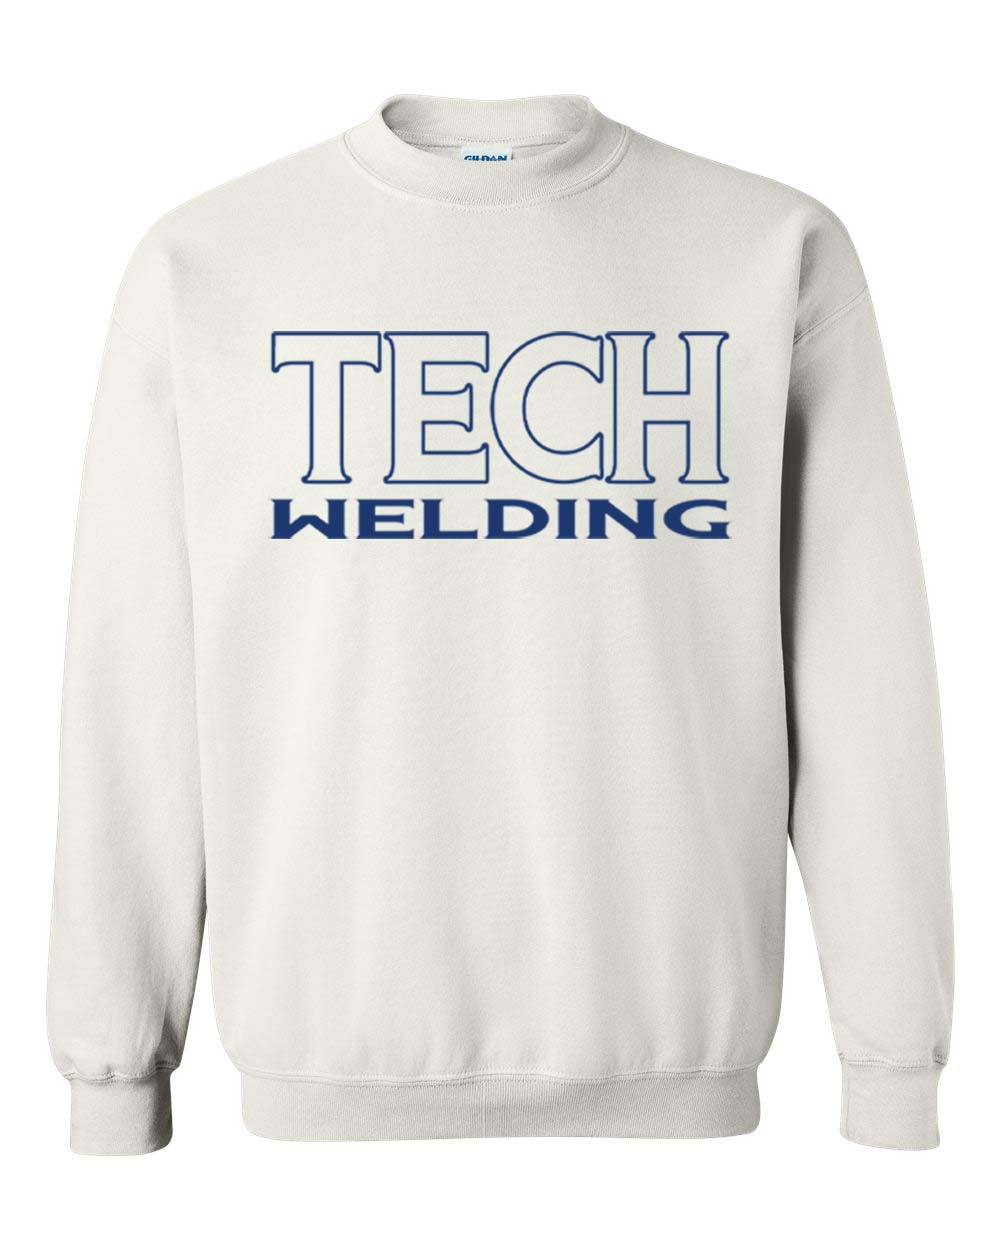 Sussex Tech Welding Design 3 non hooded sweatshirt